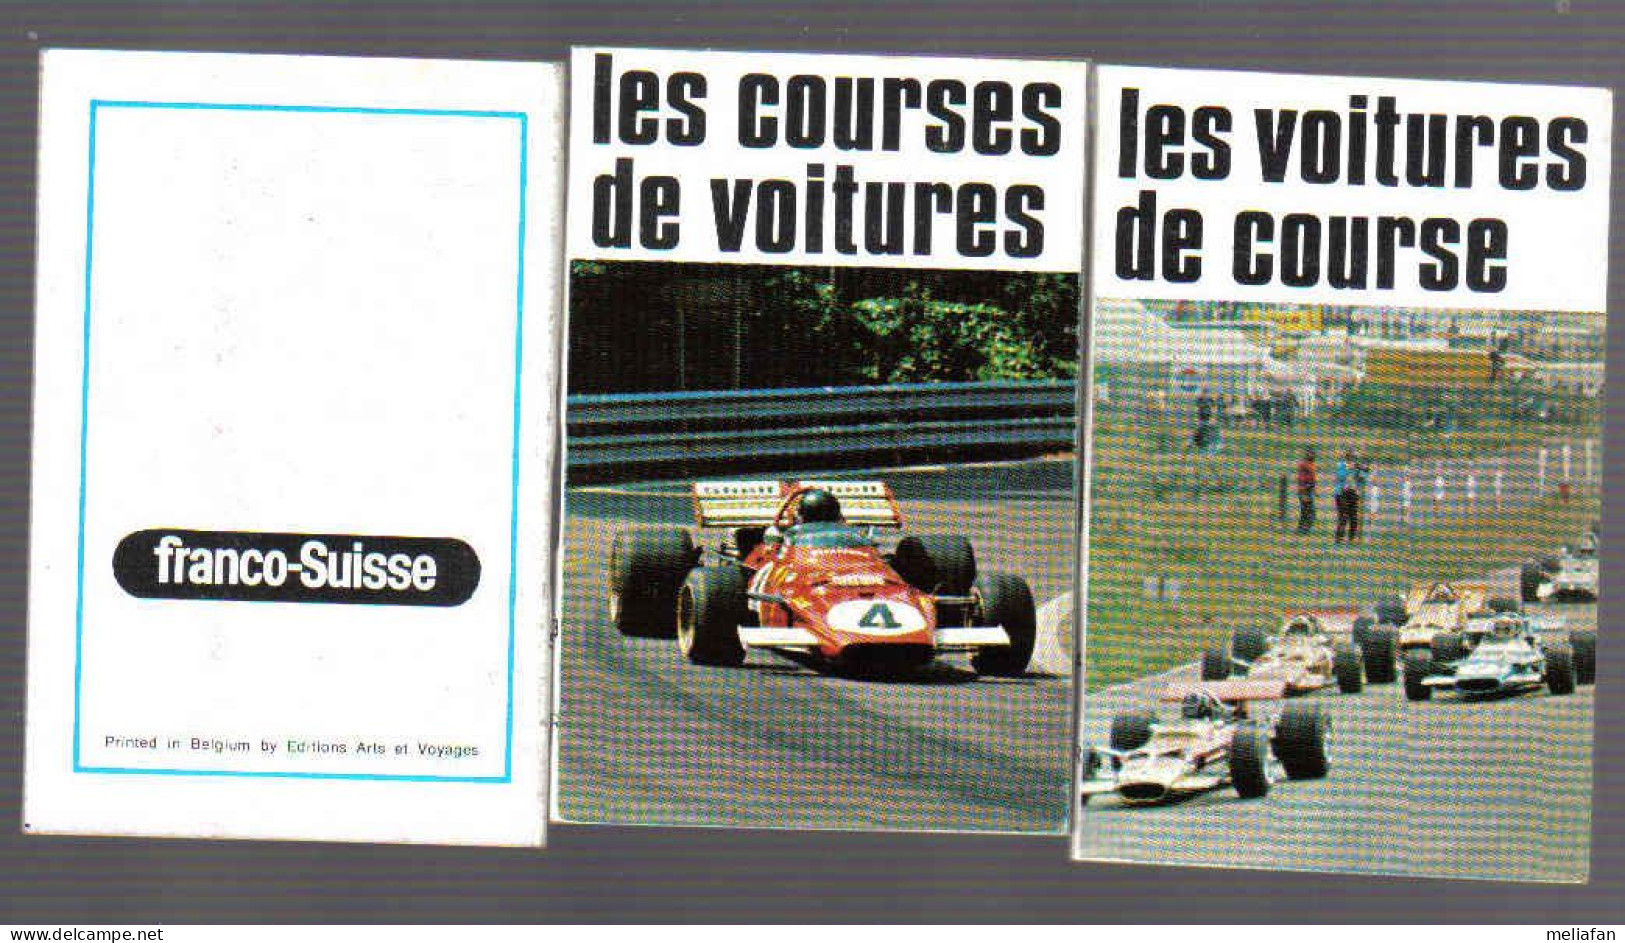 X221 - 2 MINI LIVRES FRANCO-SUISSE - LES VOITURES DE COURSES - Autorennen - F1